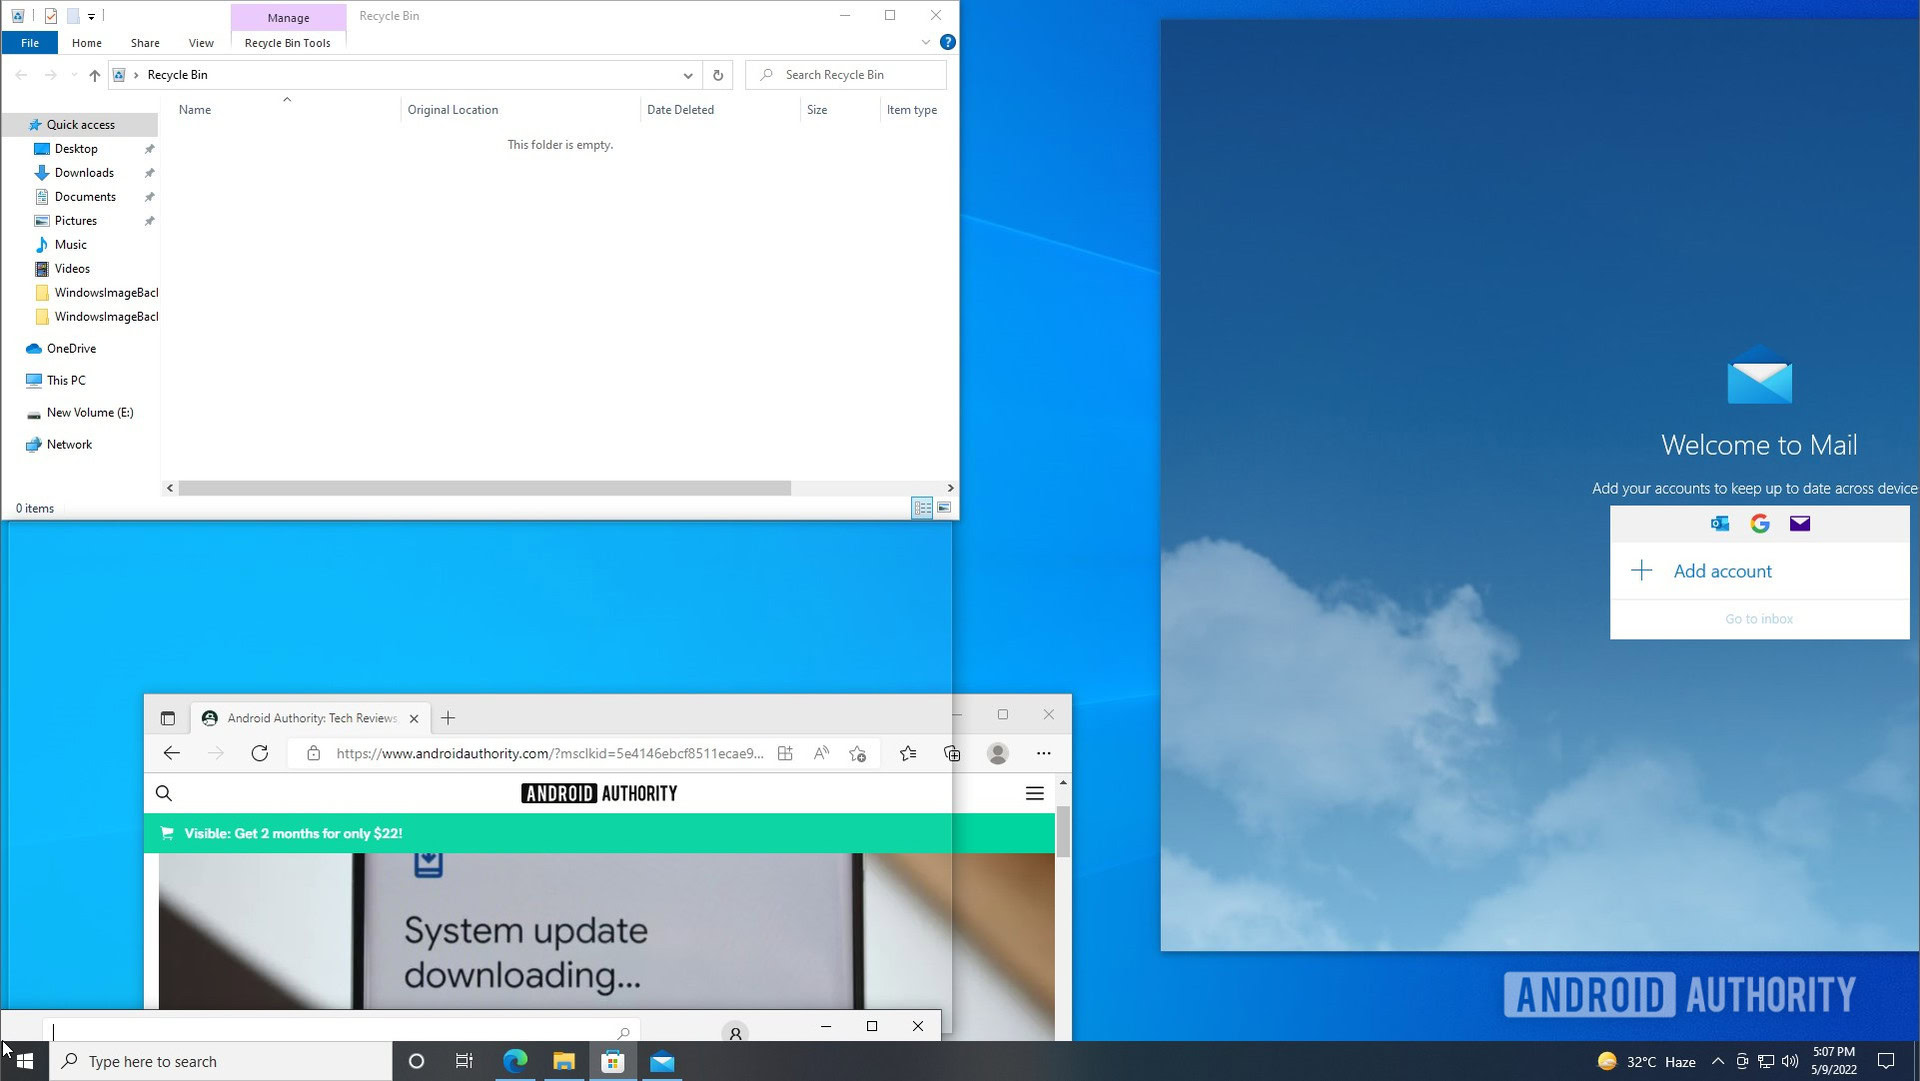 Windows 10 split screen snap assist window 2